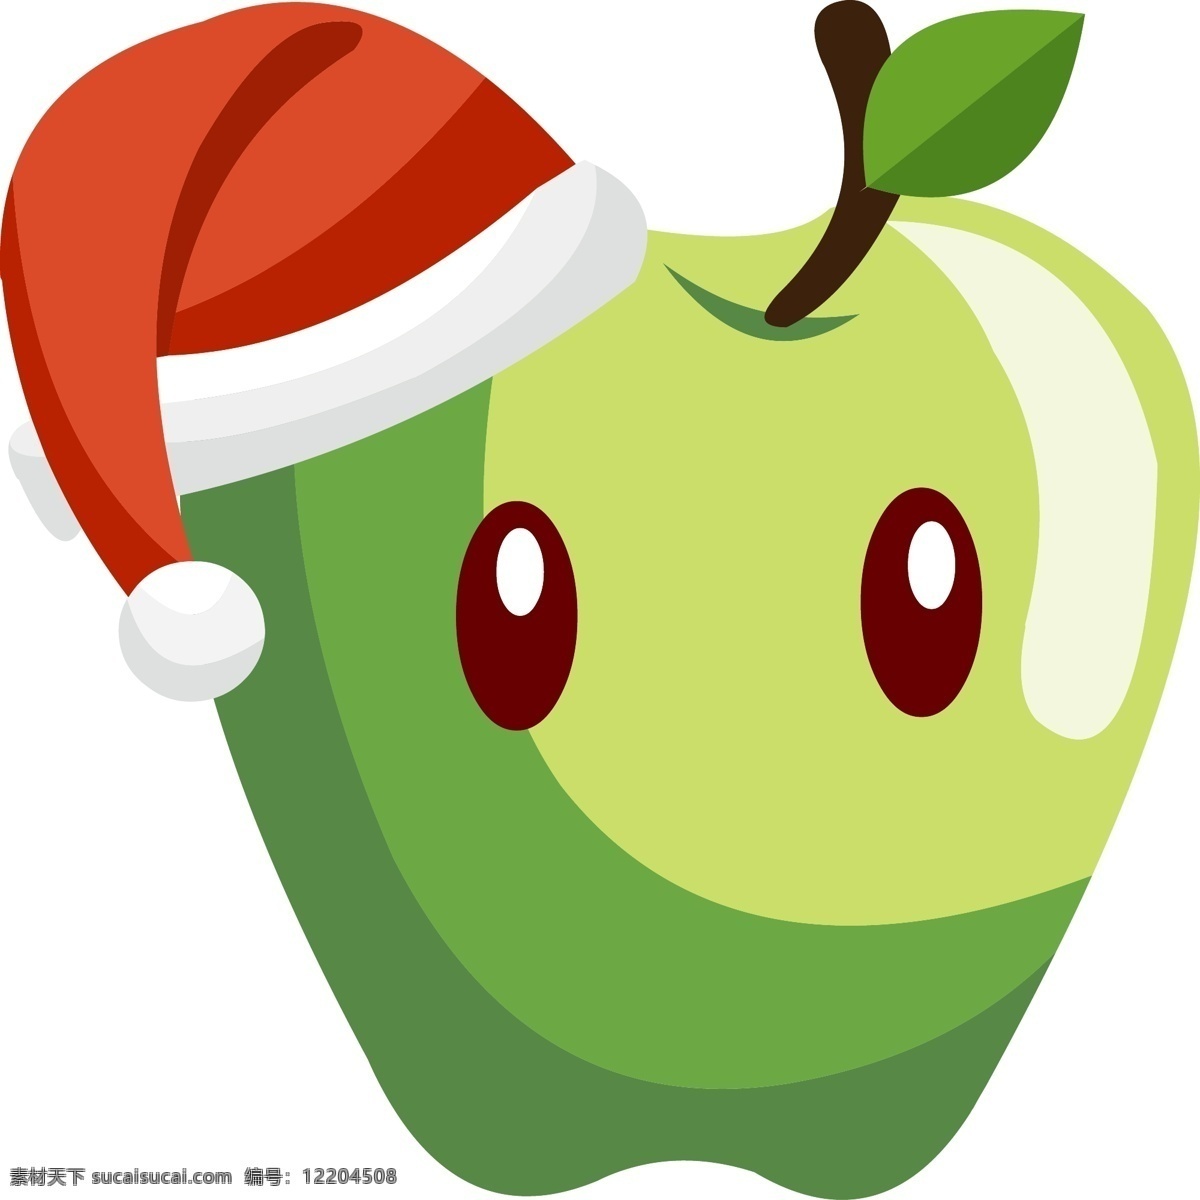 平安夜 手绘 卡通 戴 圣诞 帽 苹果 圣诞节 圣诞帽 卡通苹果 水果 手绘苹果 卡通平安果